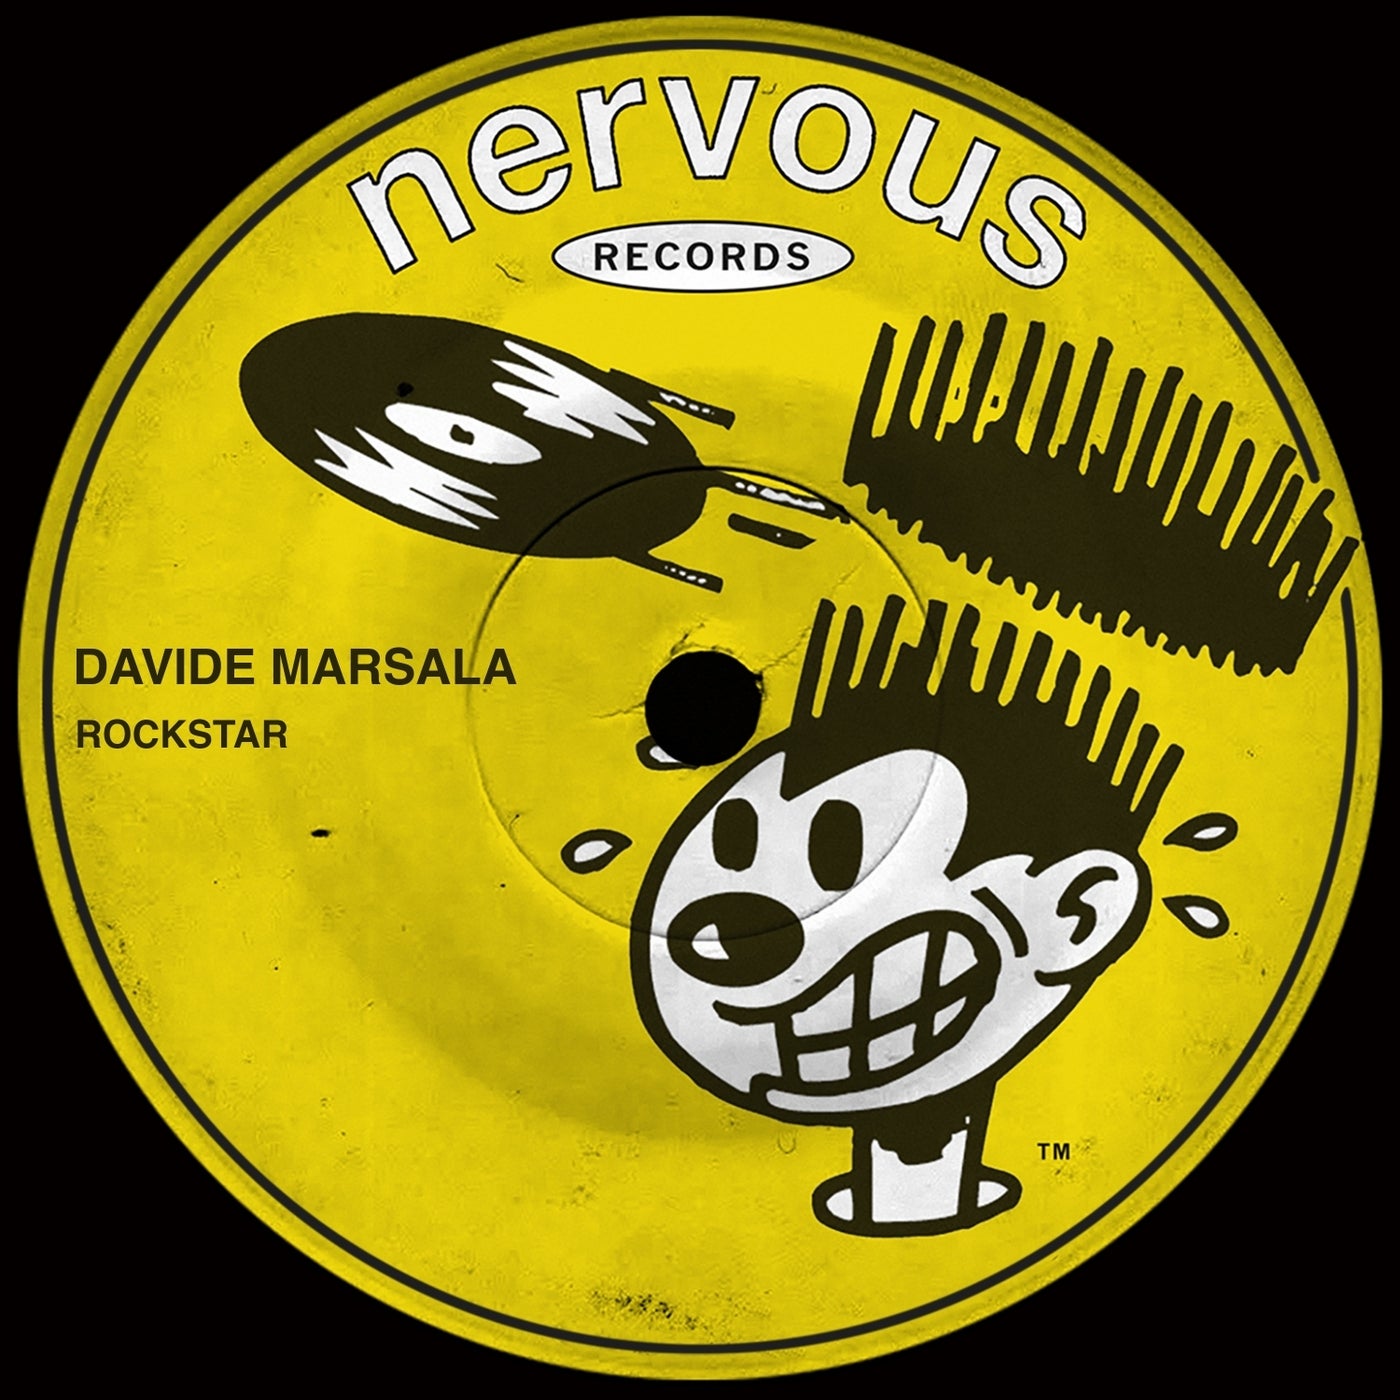 image cover: Davide Marsala - Rockstar on Nervous Records